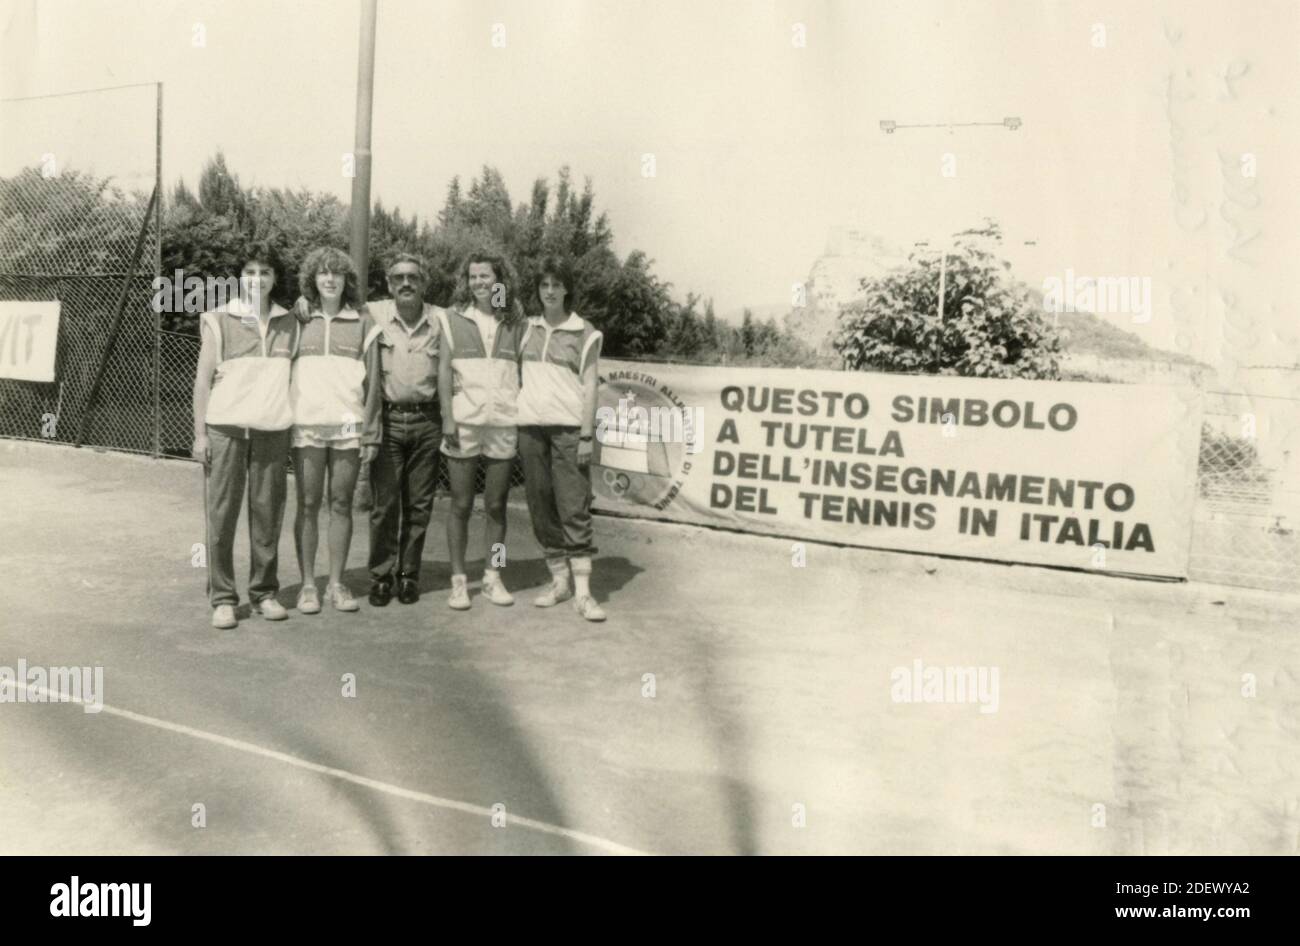 Tenis Roma 1 cl. Grimaldi, Dalla Valle, Capitán Cucchiaroni, Canapi, y Falaffa, Italia 1980 Foto de stock